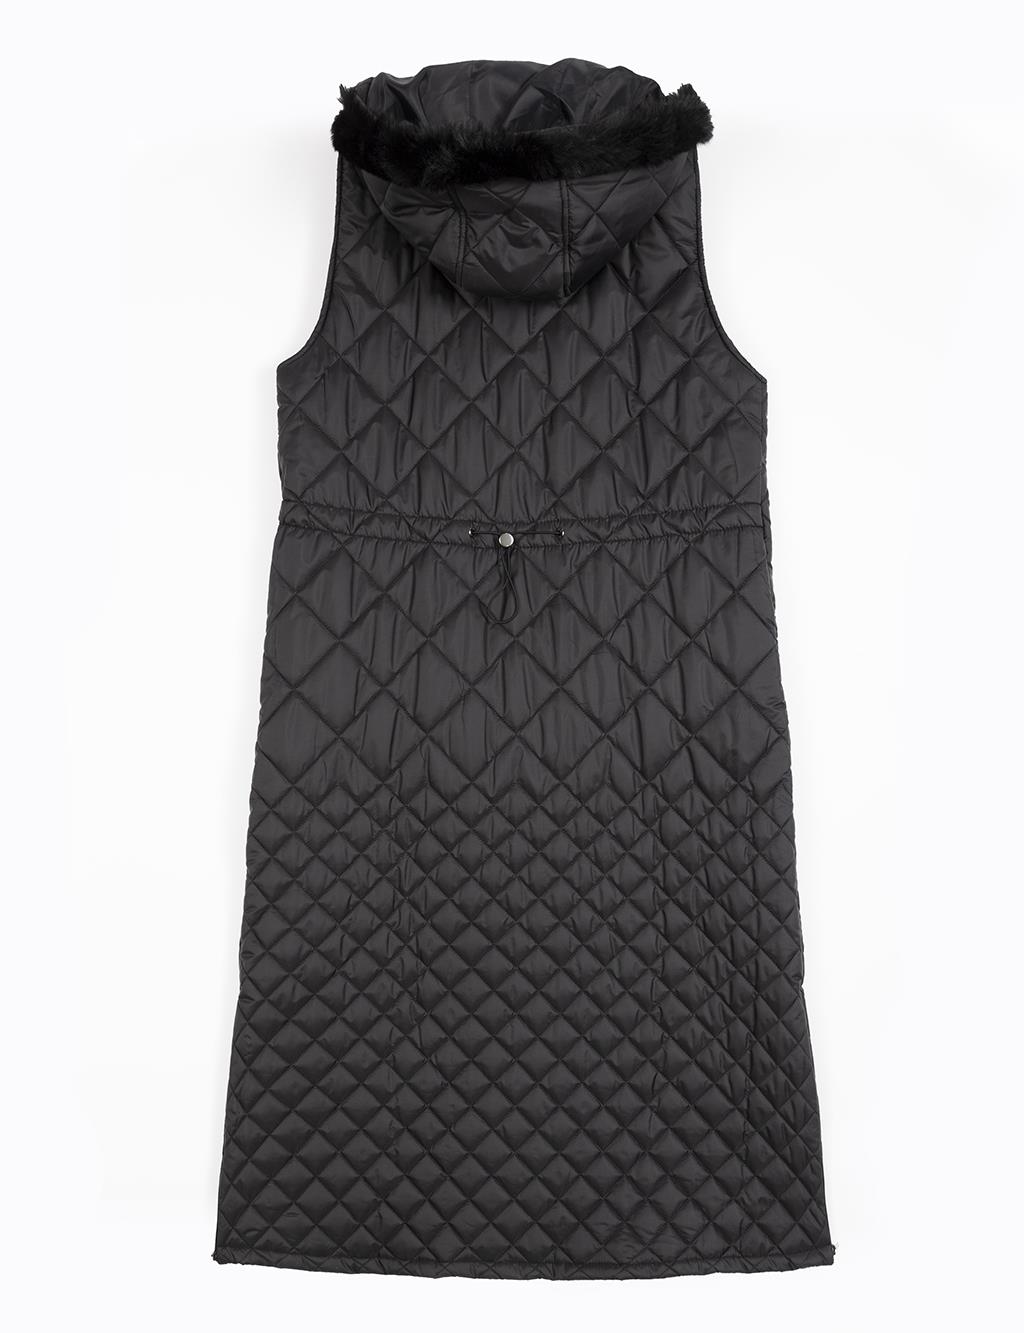 Diamond Patterned Zippered Black Vest